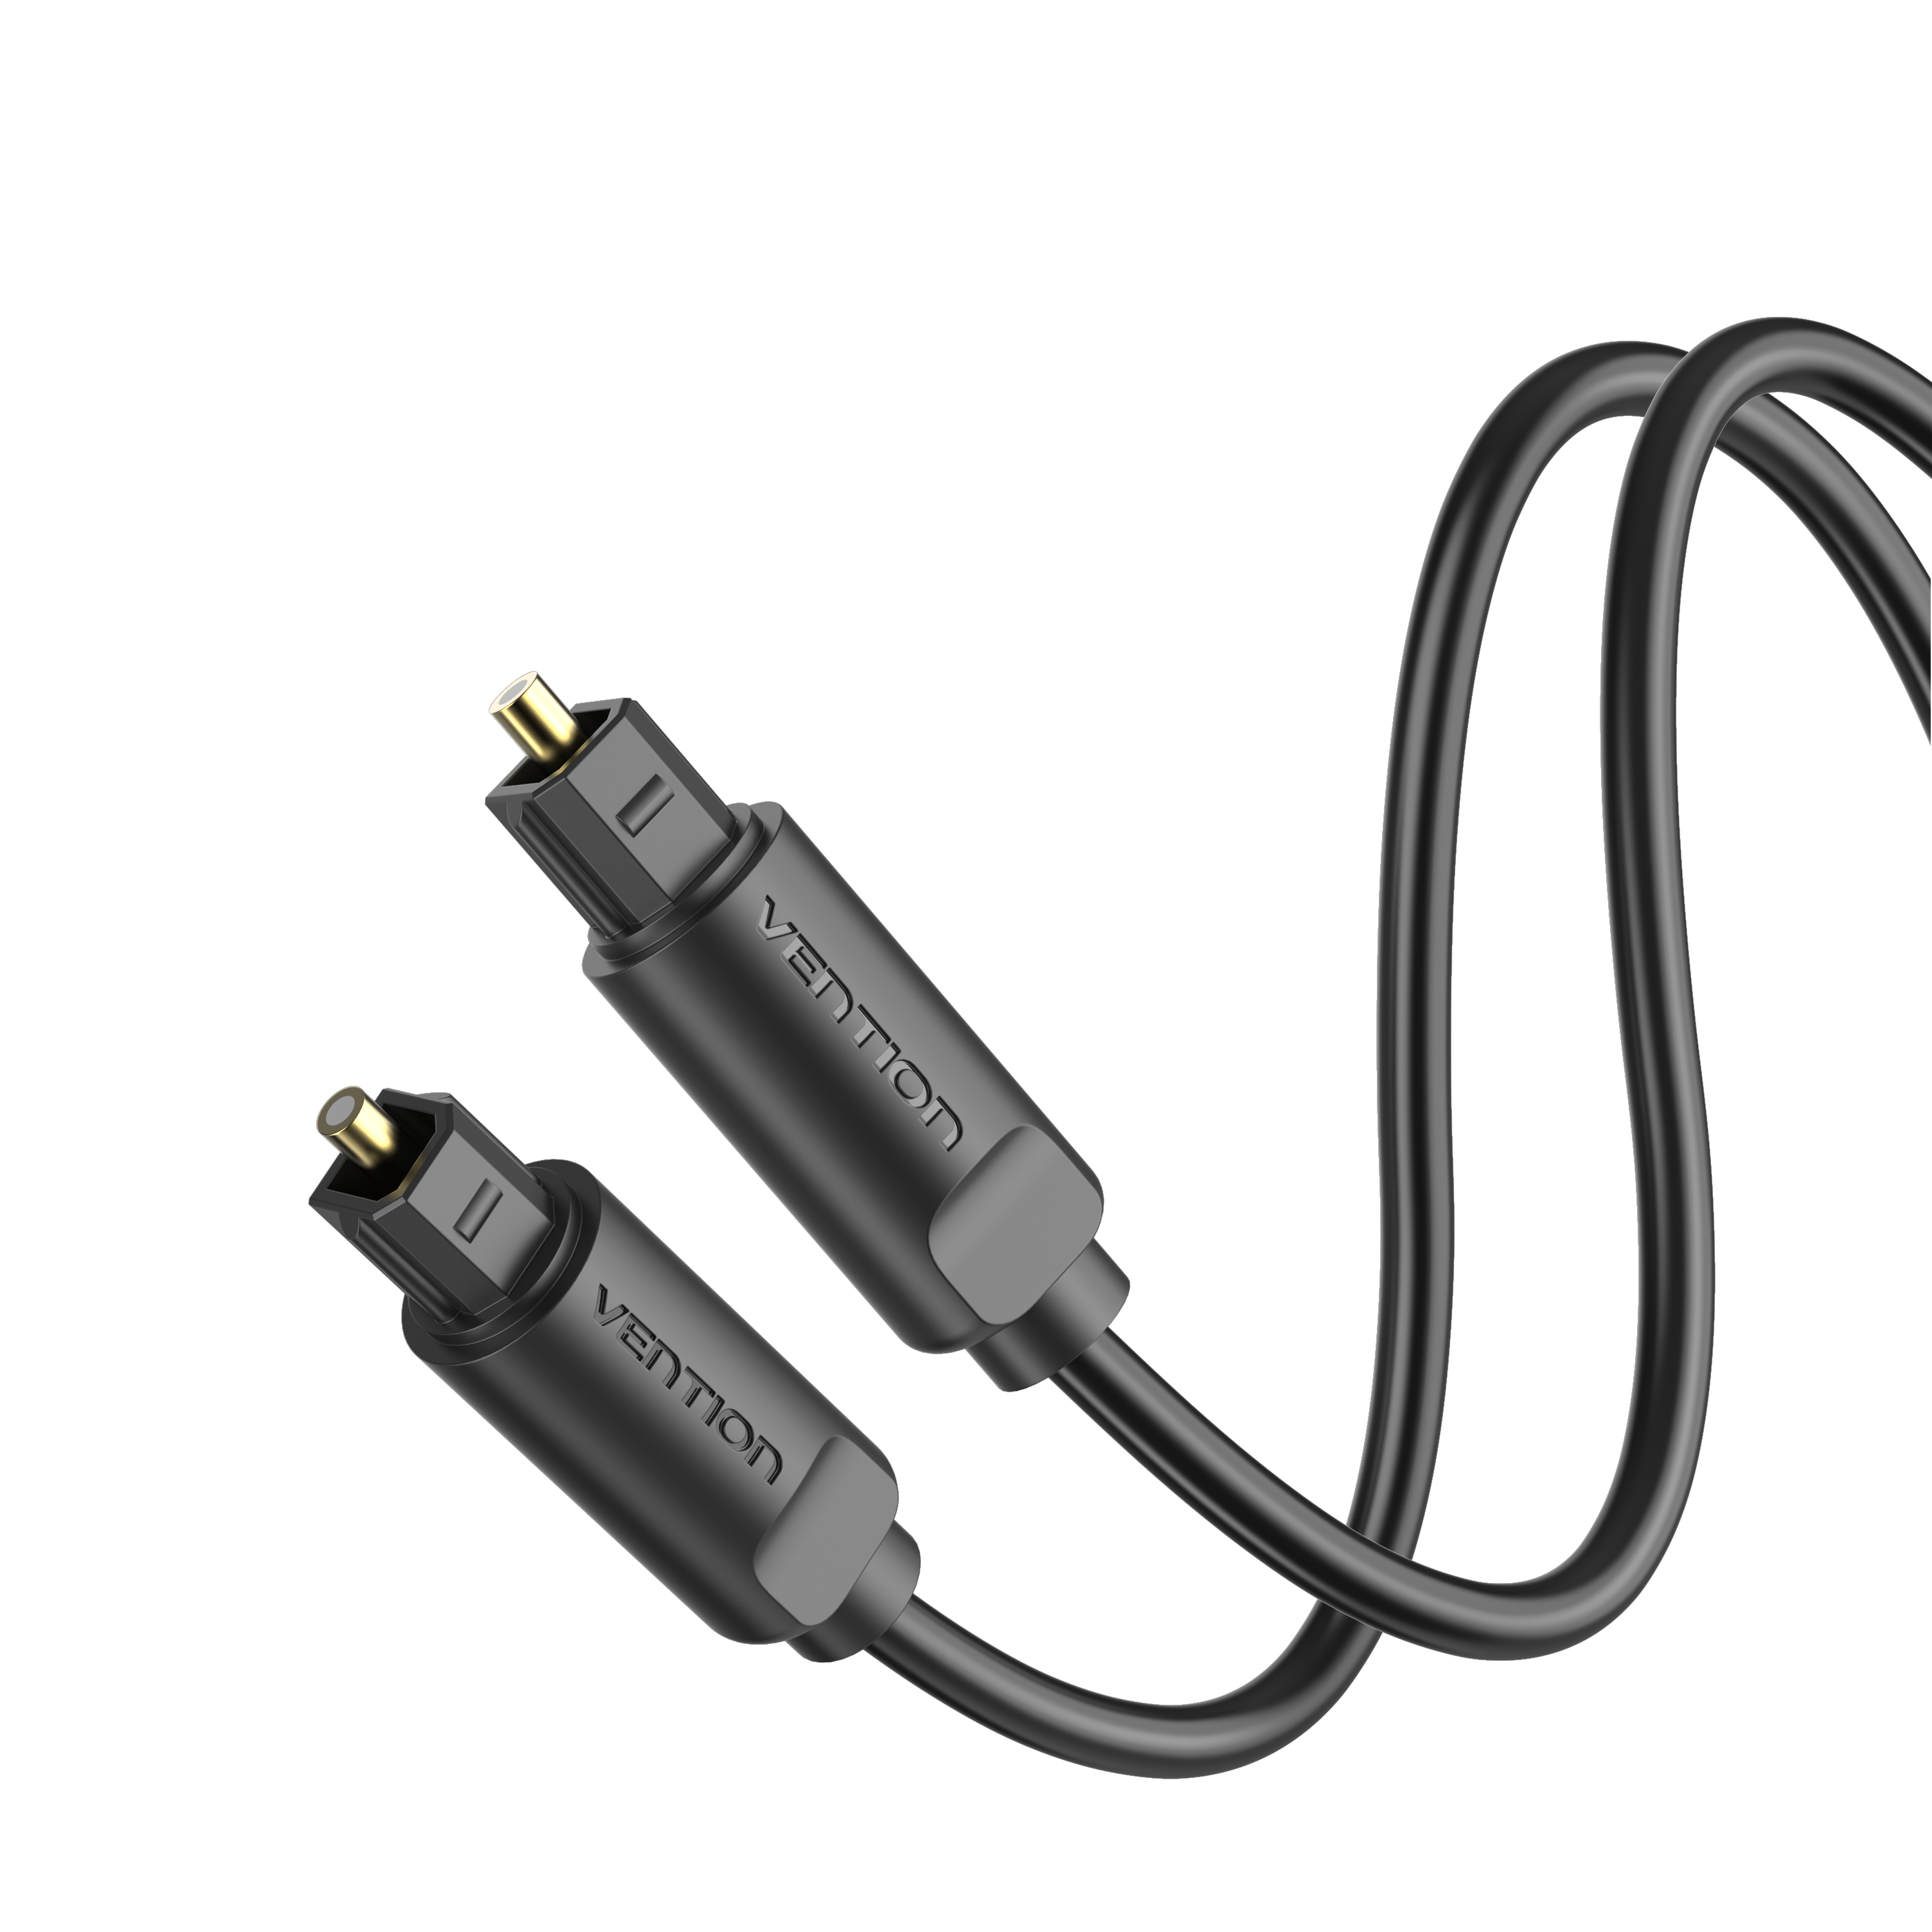 Ototon® 3M Câble Optique Audio Numérique Cordon Fibre Optique